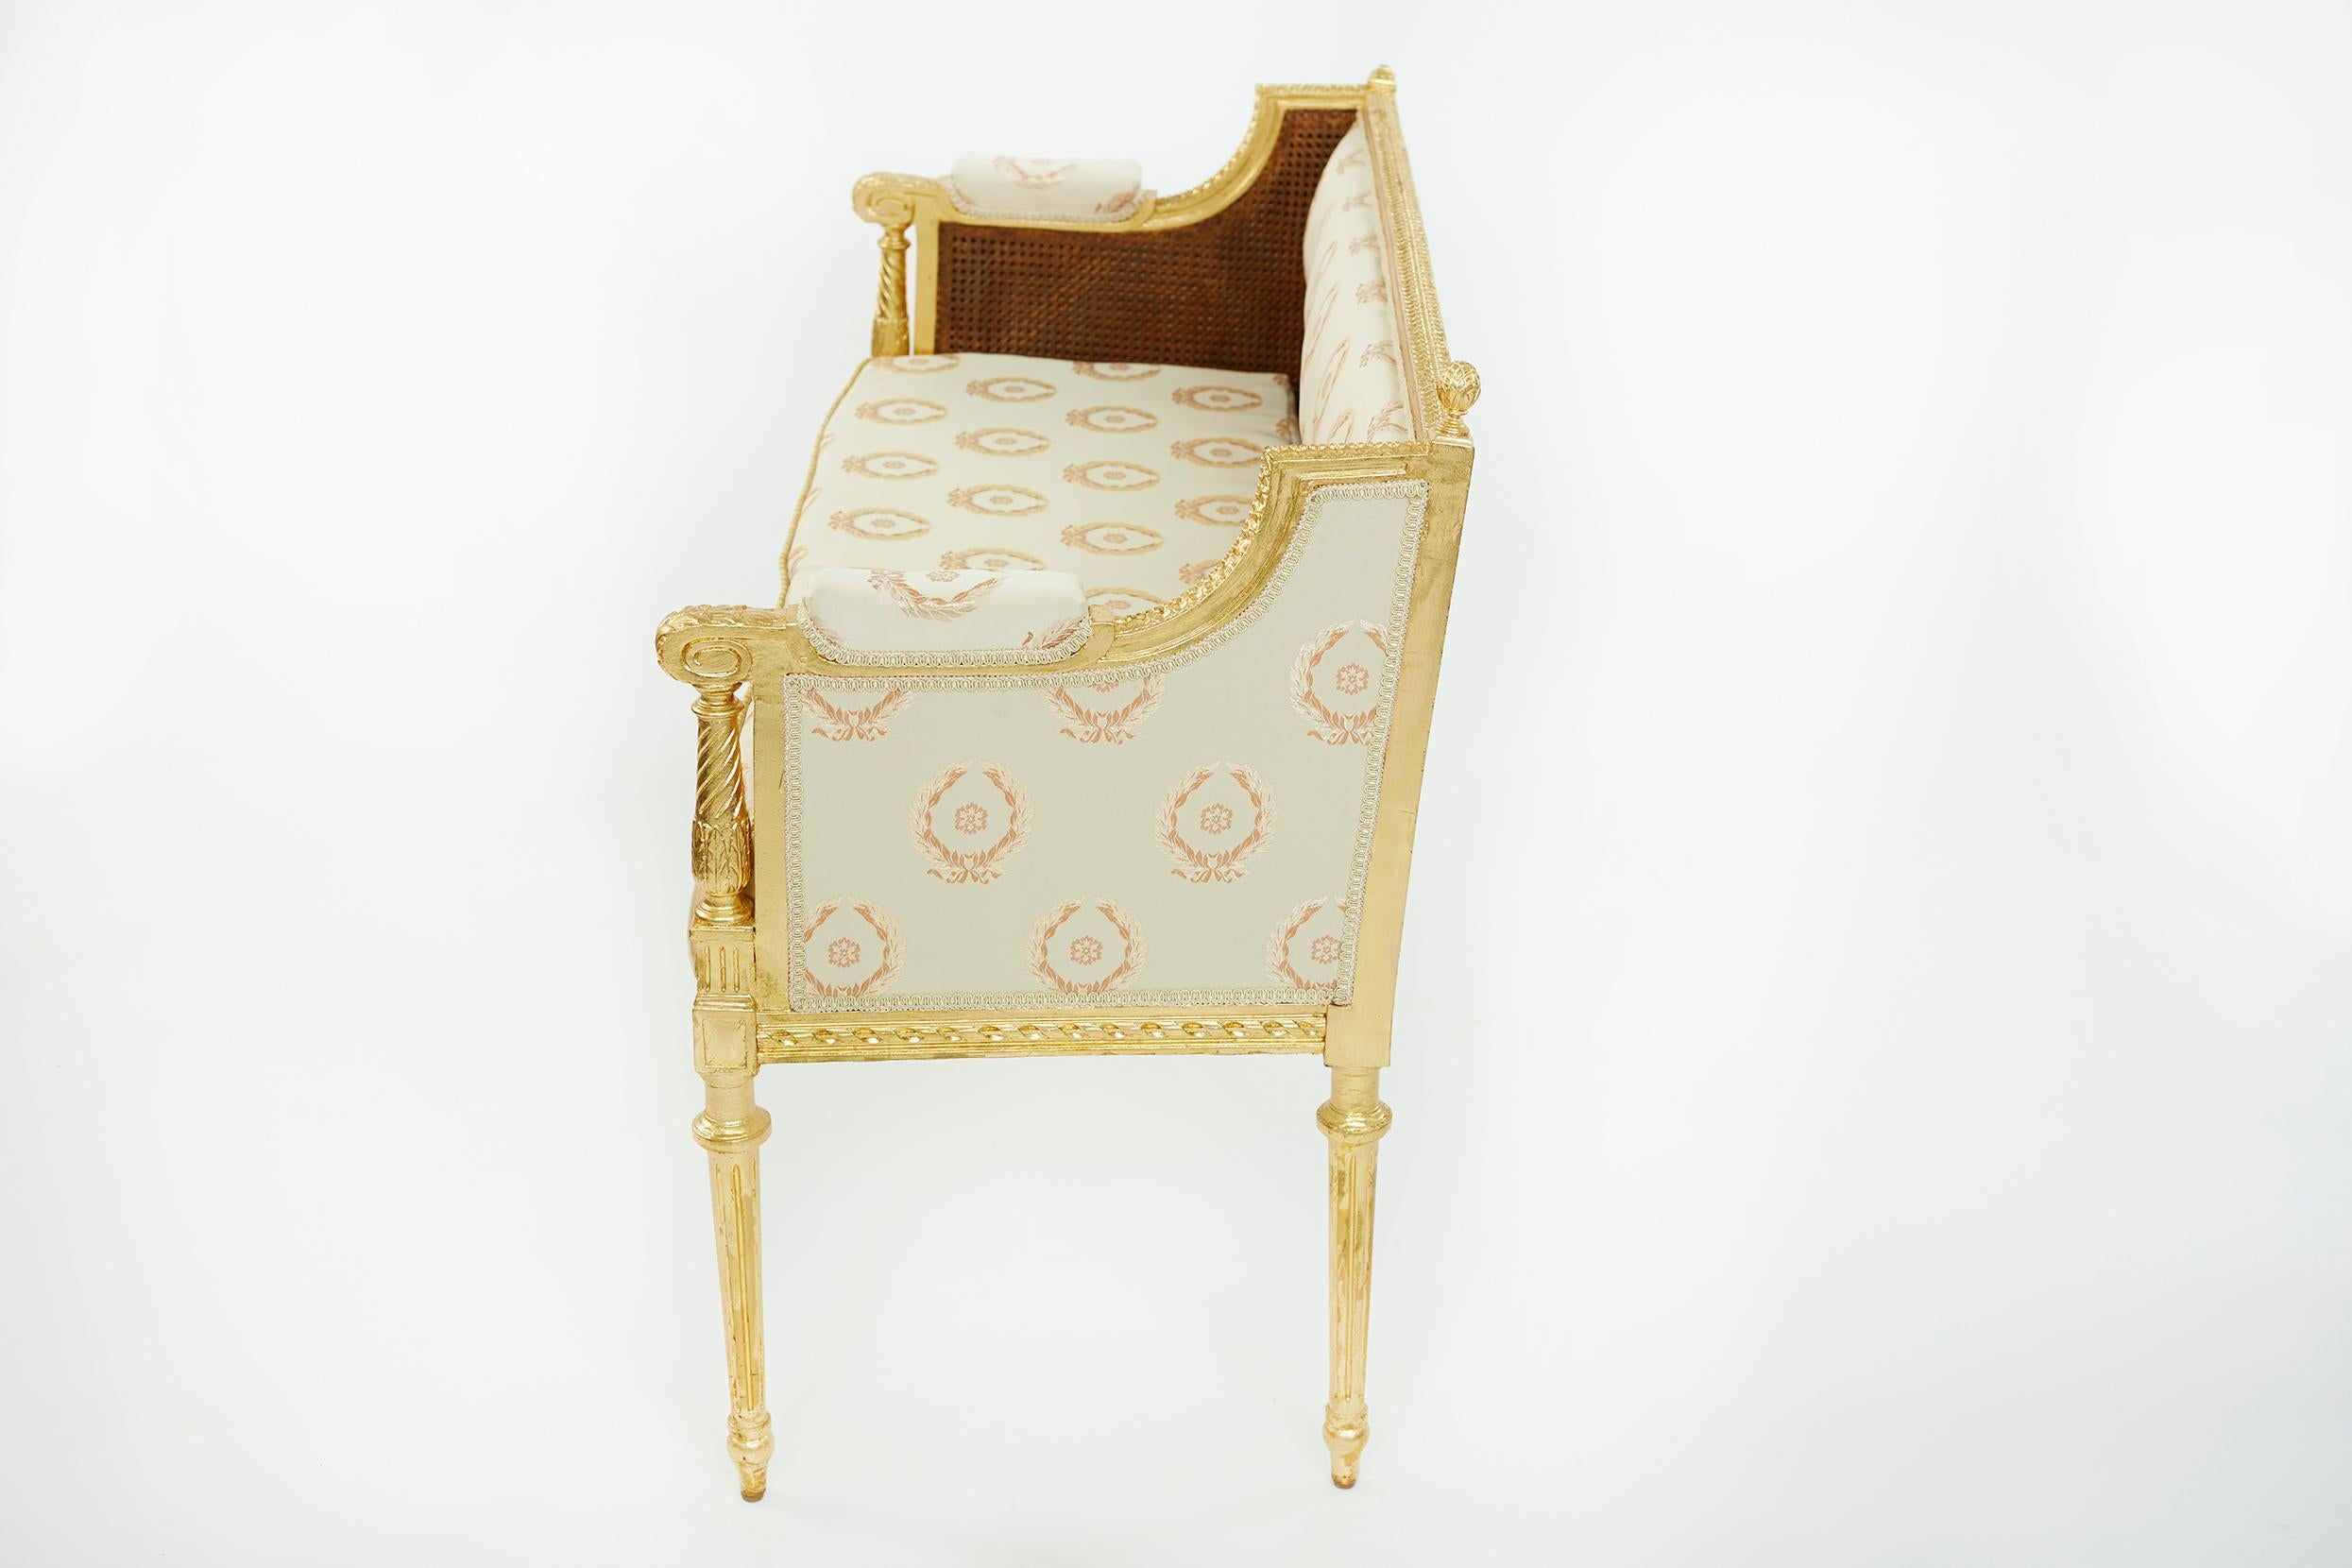 Schönes Sofa im neoklassischen Stil mit vergoldetem Holzrahmen und handgeschnitzter Rückwand. Der Sitz ist mit einem cremefarbenen Damastbezug mit Lorbeerkranzmotiv bezogen. Das Sofa ist in gutem Zustand mit leichten Gebrauchsspuren, die dem Alter